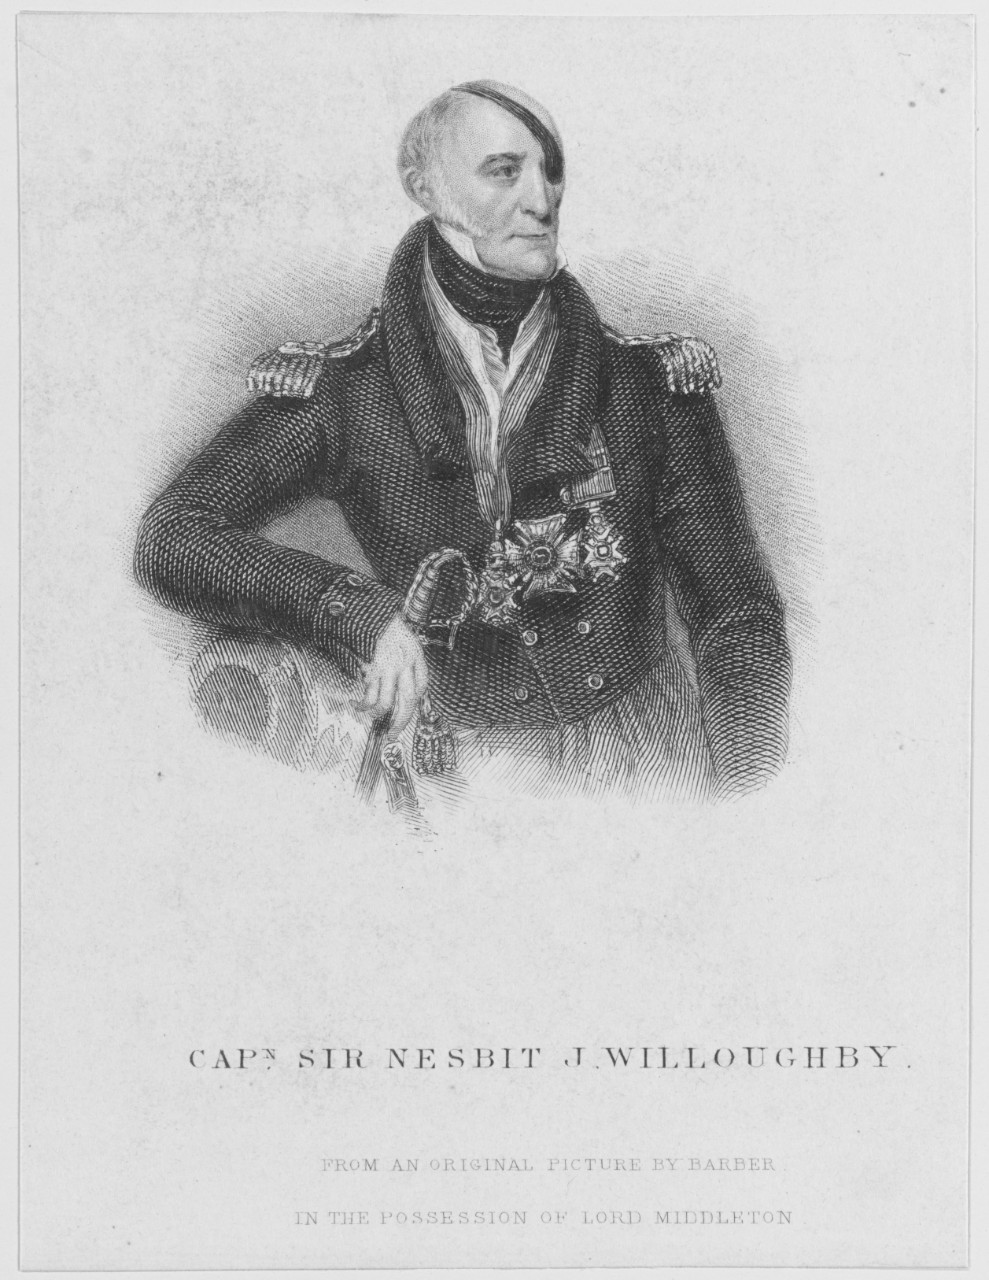 Captain Sir Nesbit J. Willoughby